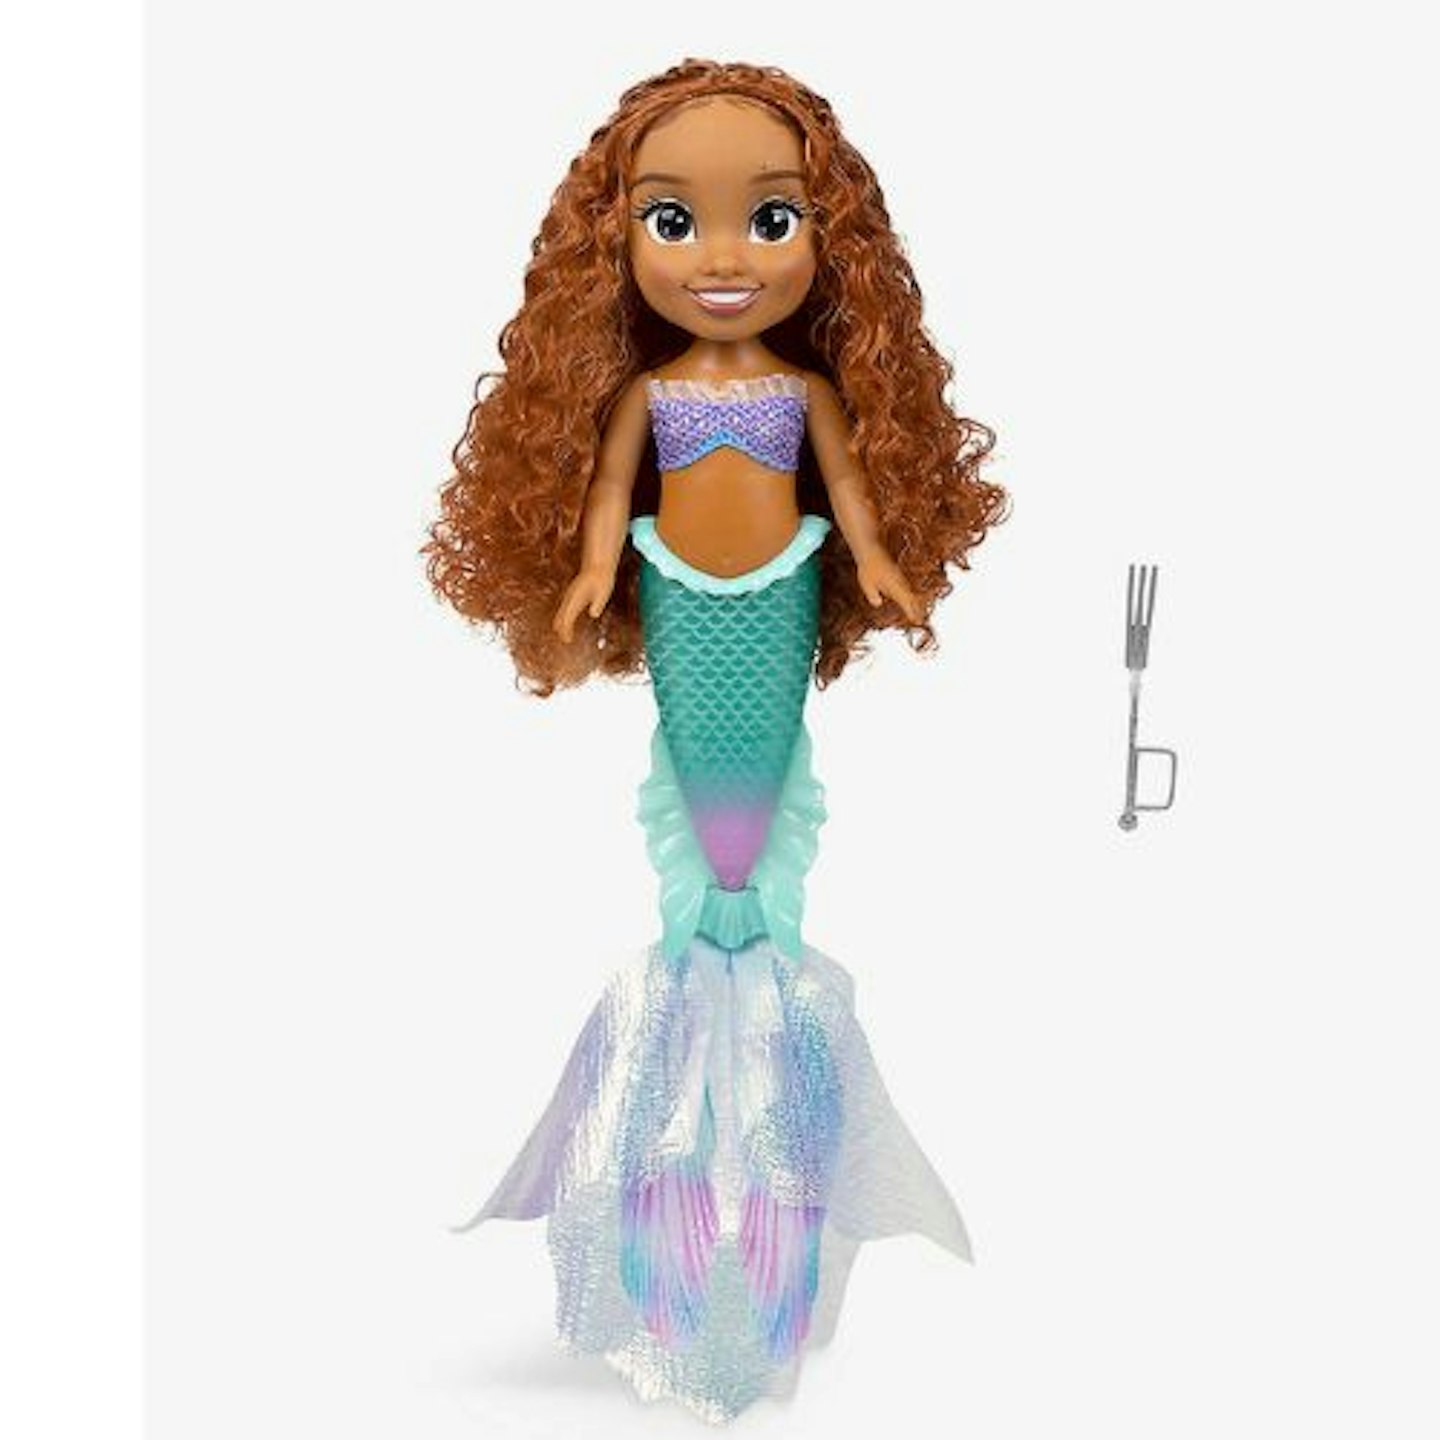 Best Children's toy: The Little Mermaid Ariel doll 38cm